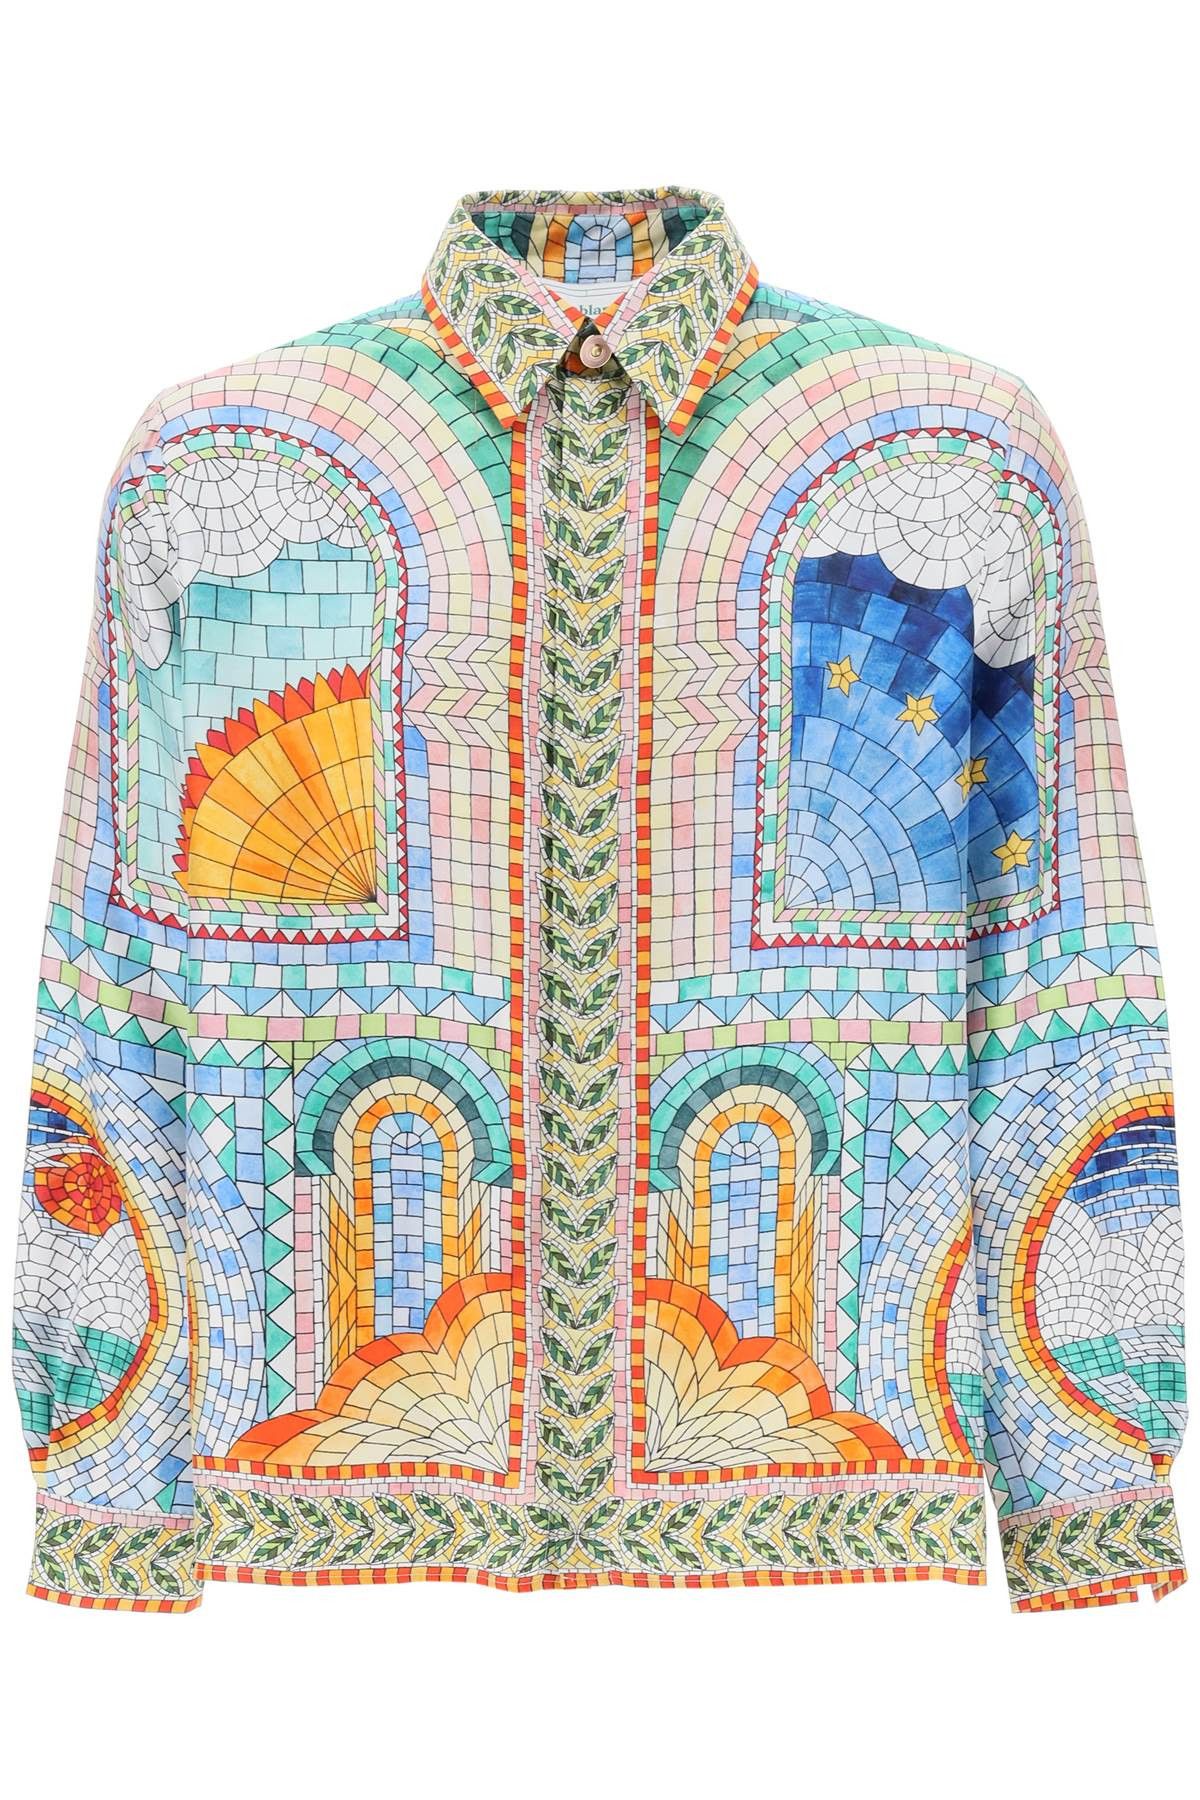 Casablanca Casablanca mosaic de damas silk shirt | Grailed